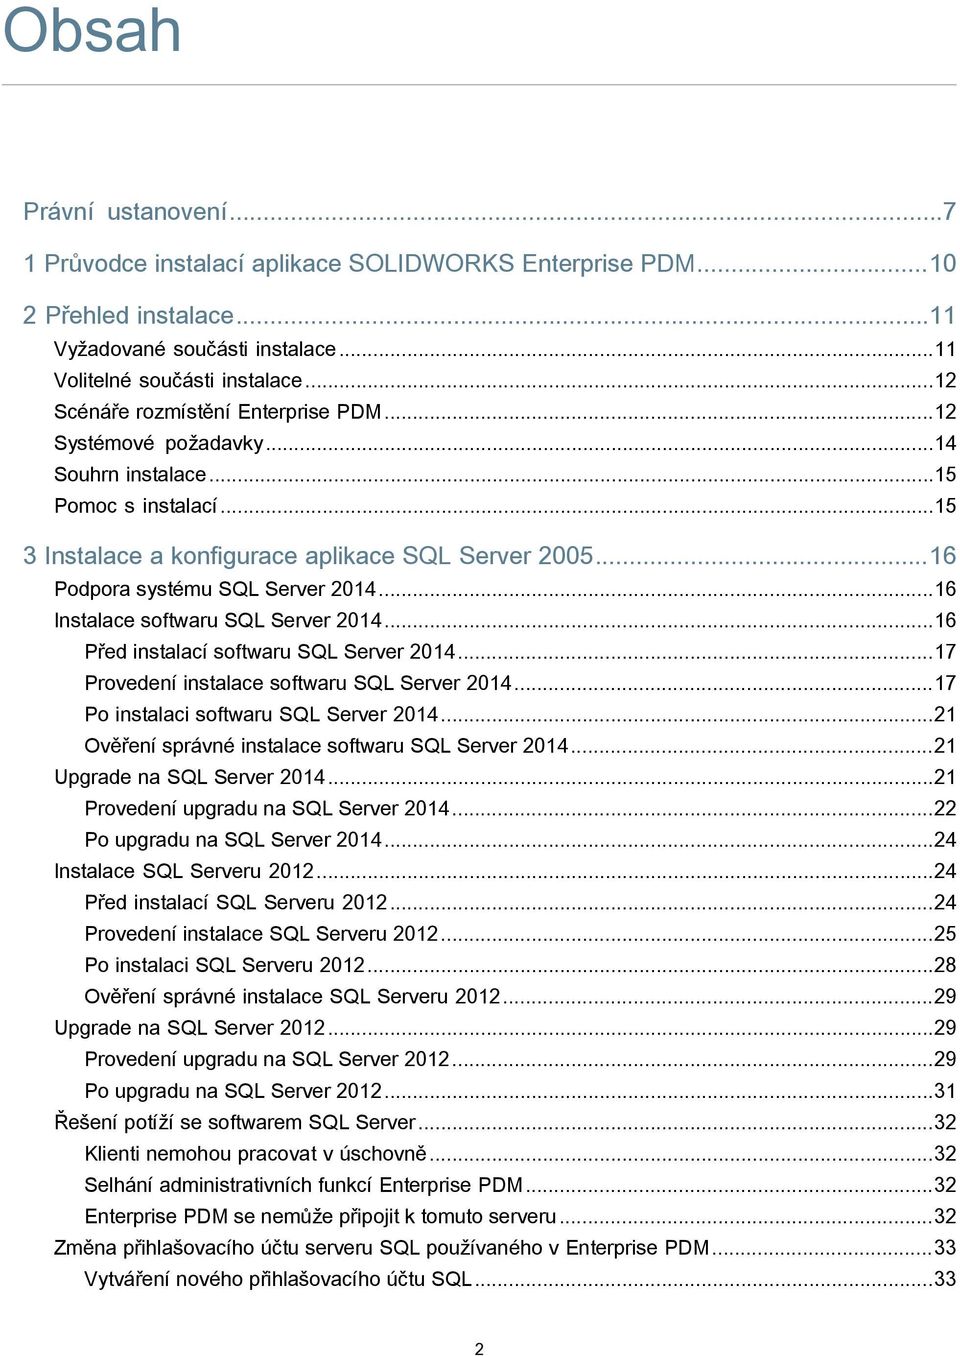 ..16 Instalace softwaru SQL Server 2014...16 Před instalací softwaru SQL Server 2014...17 Provedení instalace softwaru SQL Server 2014...17 Po instalaci softwaru SQL Server 2014.